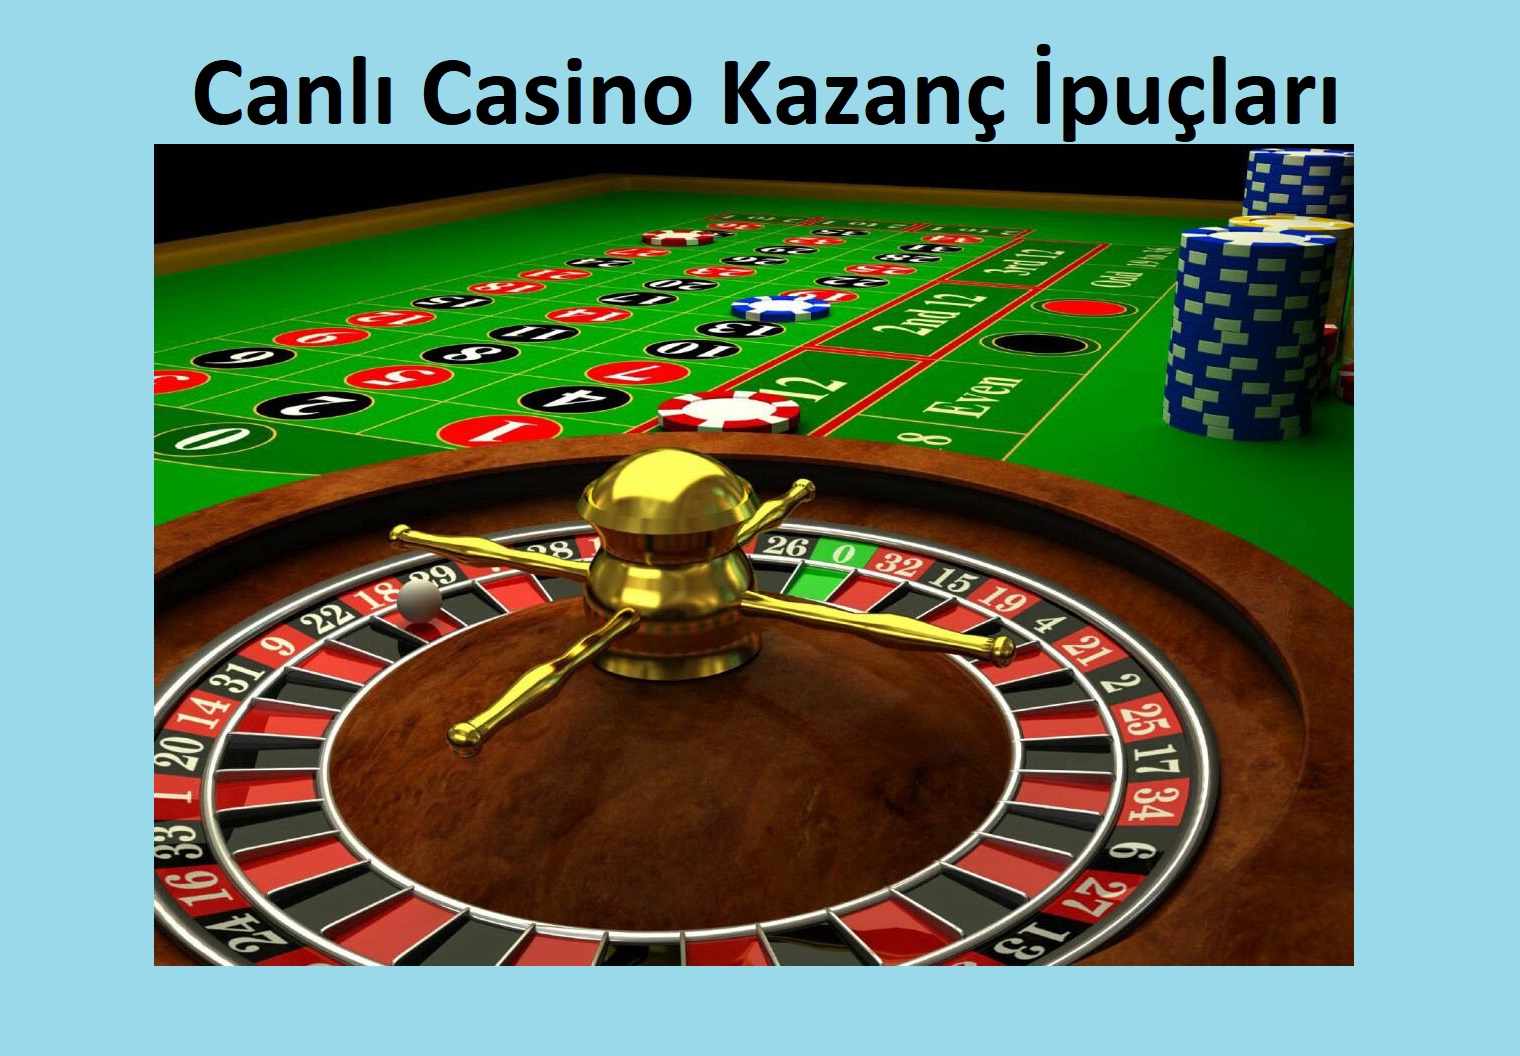 Canlı Casino Kazanç İpuçları   Casino Siteleri   Güvenilir Casino